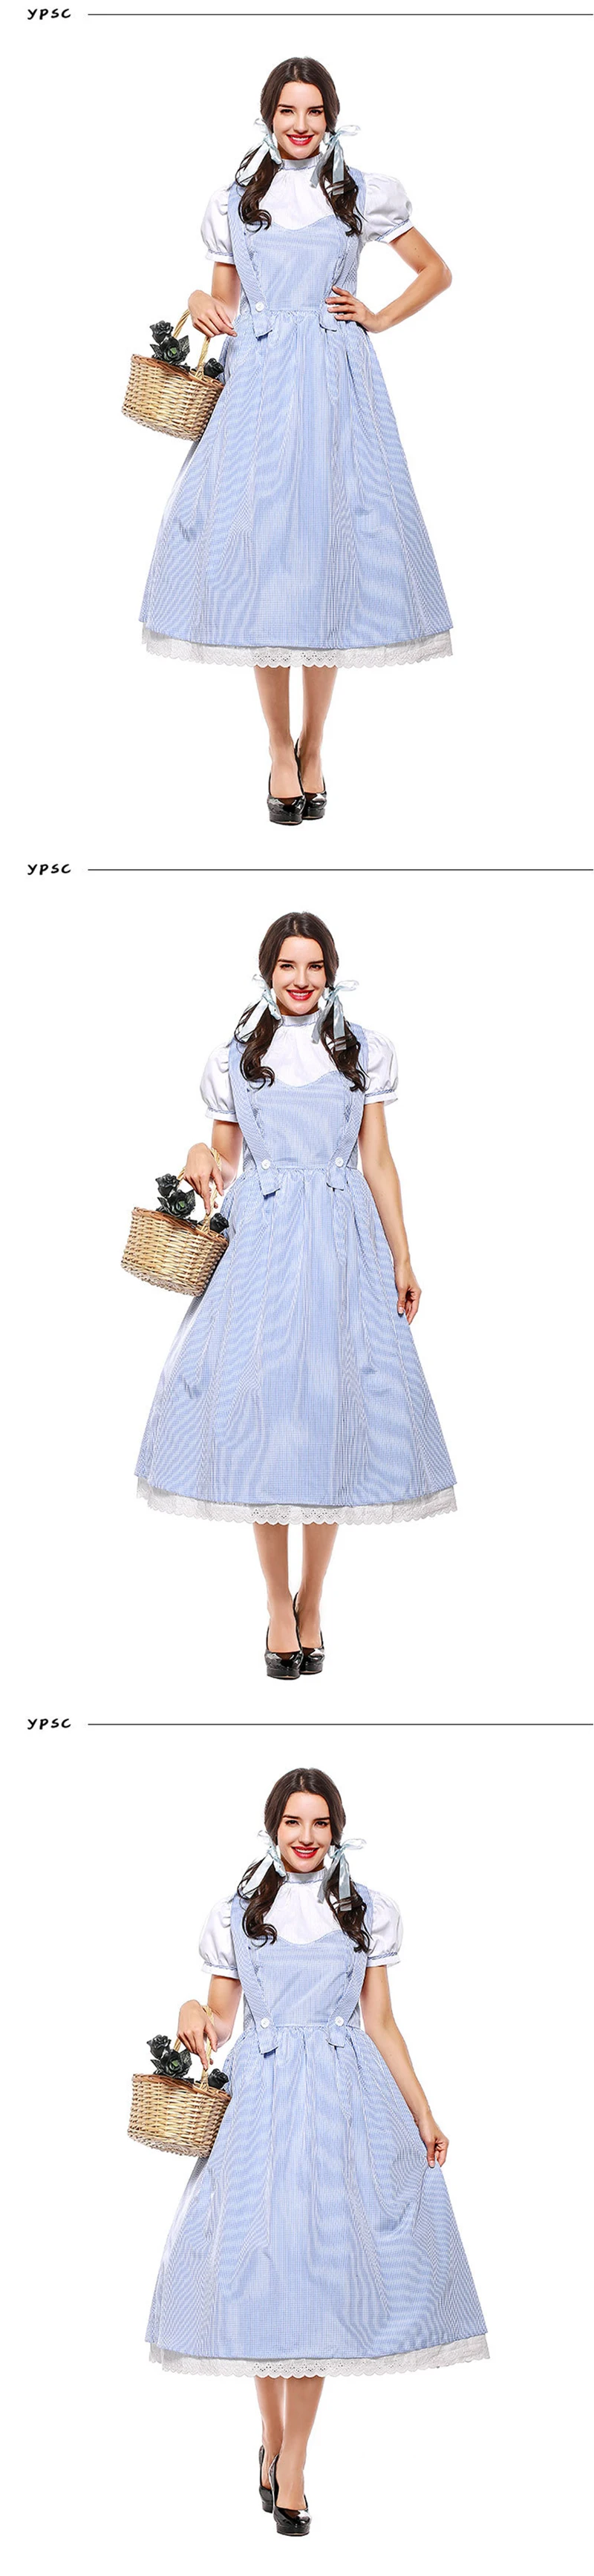 Плюс Размеры Dorothy с персонажами мультфильма «Волшебник страны Оз» семейная одежда взрослым Для женщин Dorothy принцесса горничной Наряжаться костюмная вечеринка на Хэллоуин платье наряд